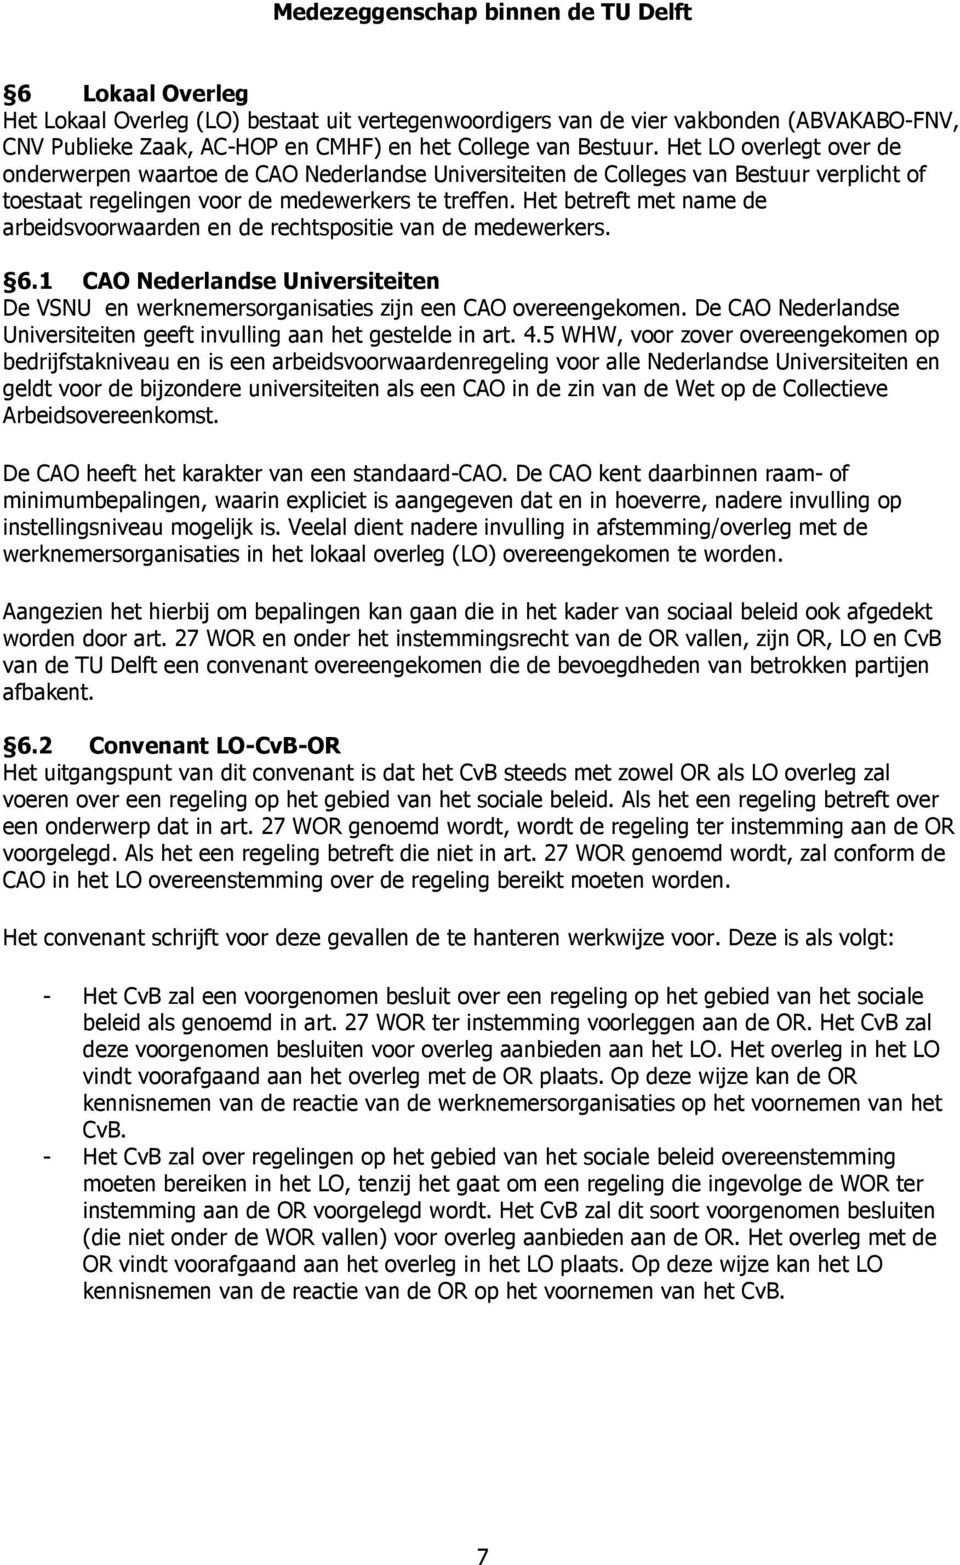 Het betreft met name de arbeidsvoorwaarden en de rechtspositie van de medewerkers. 6.1 CAO Nederlandse Universiteiten De VSNU en werknemersorganisaties zijn een CAO overeengekomen.